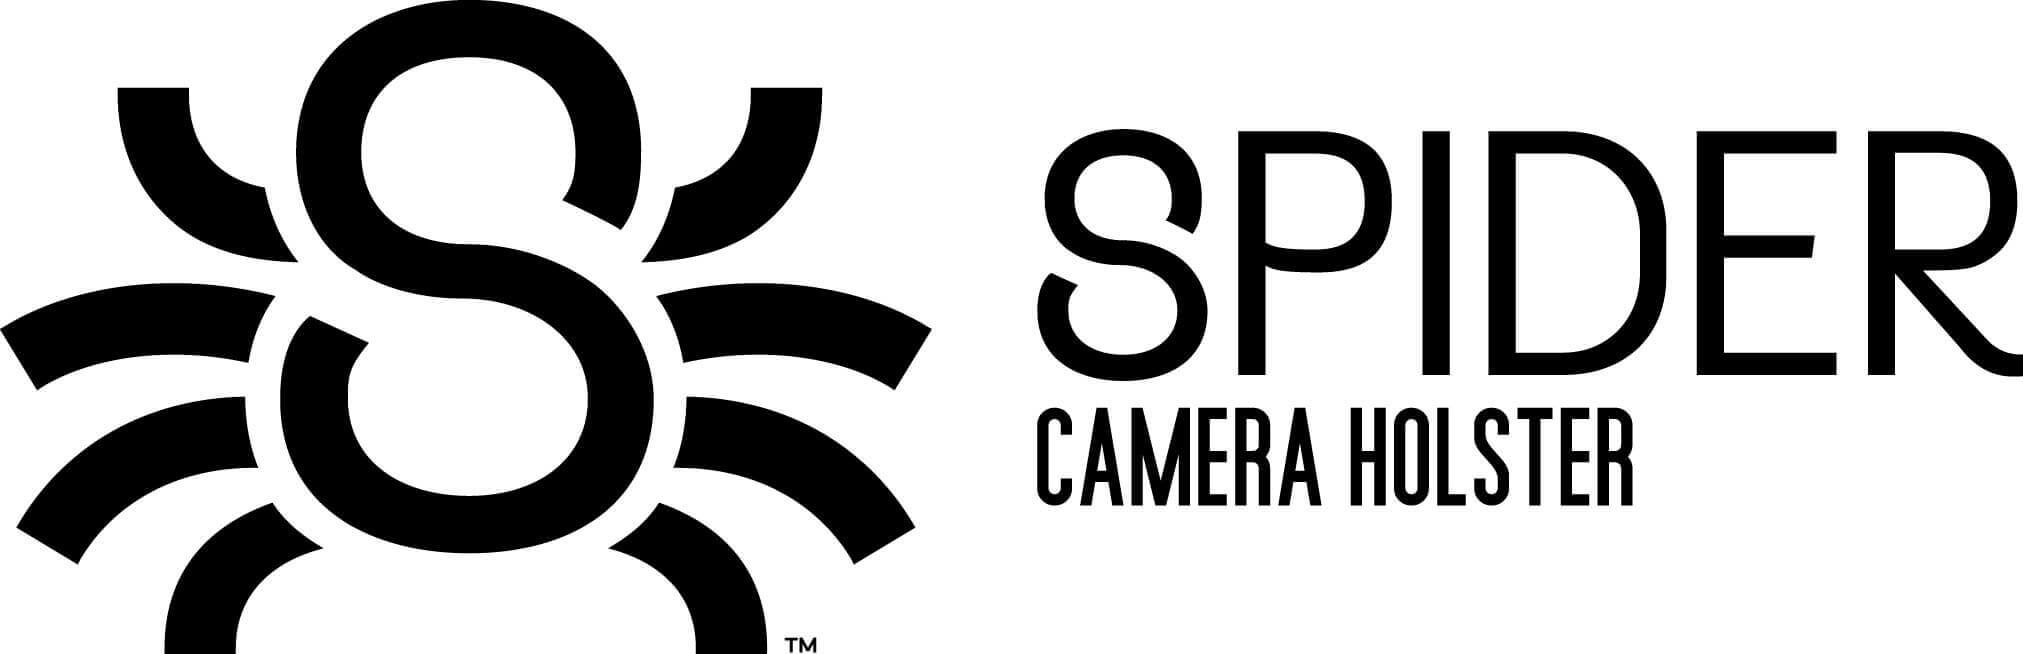 Spider Camera Holster logo